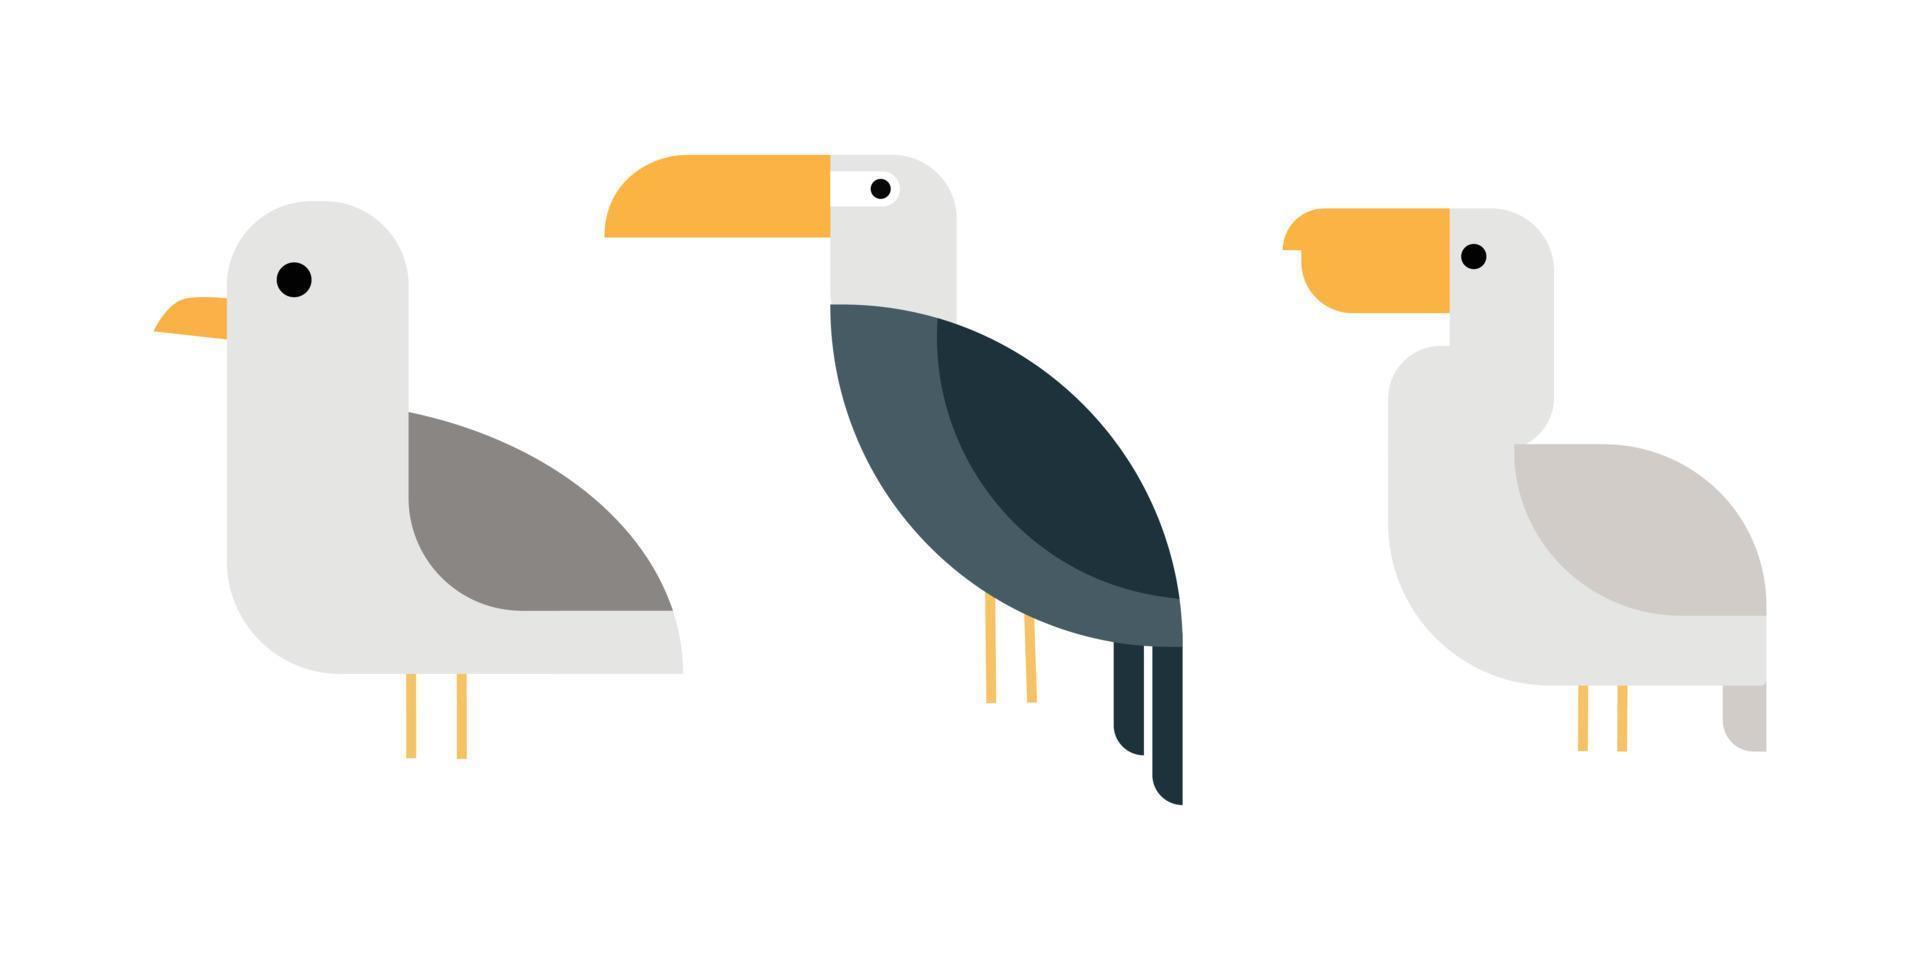 illustrazioni di design piatto di uccelli nei colori grigi. vettore